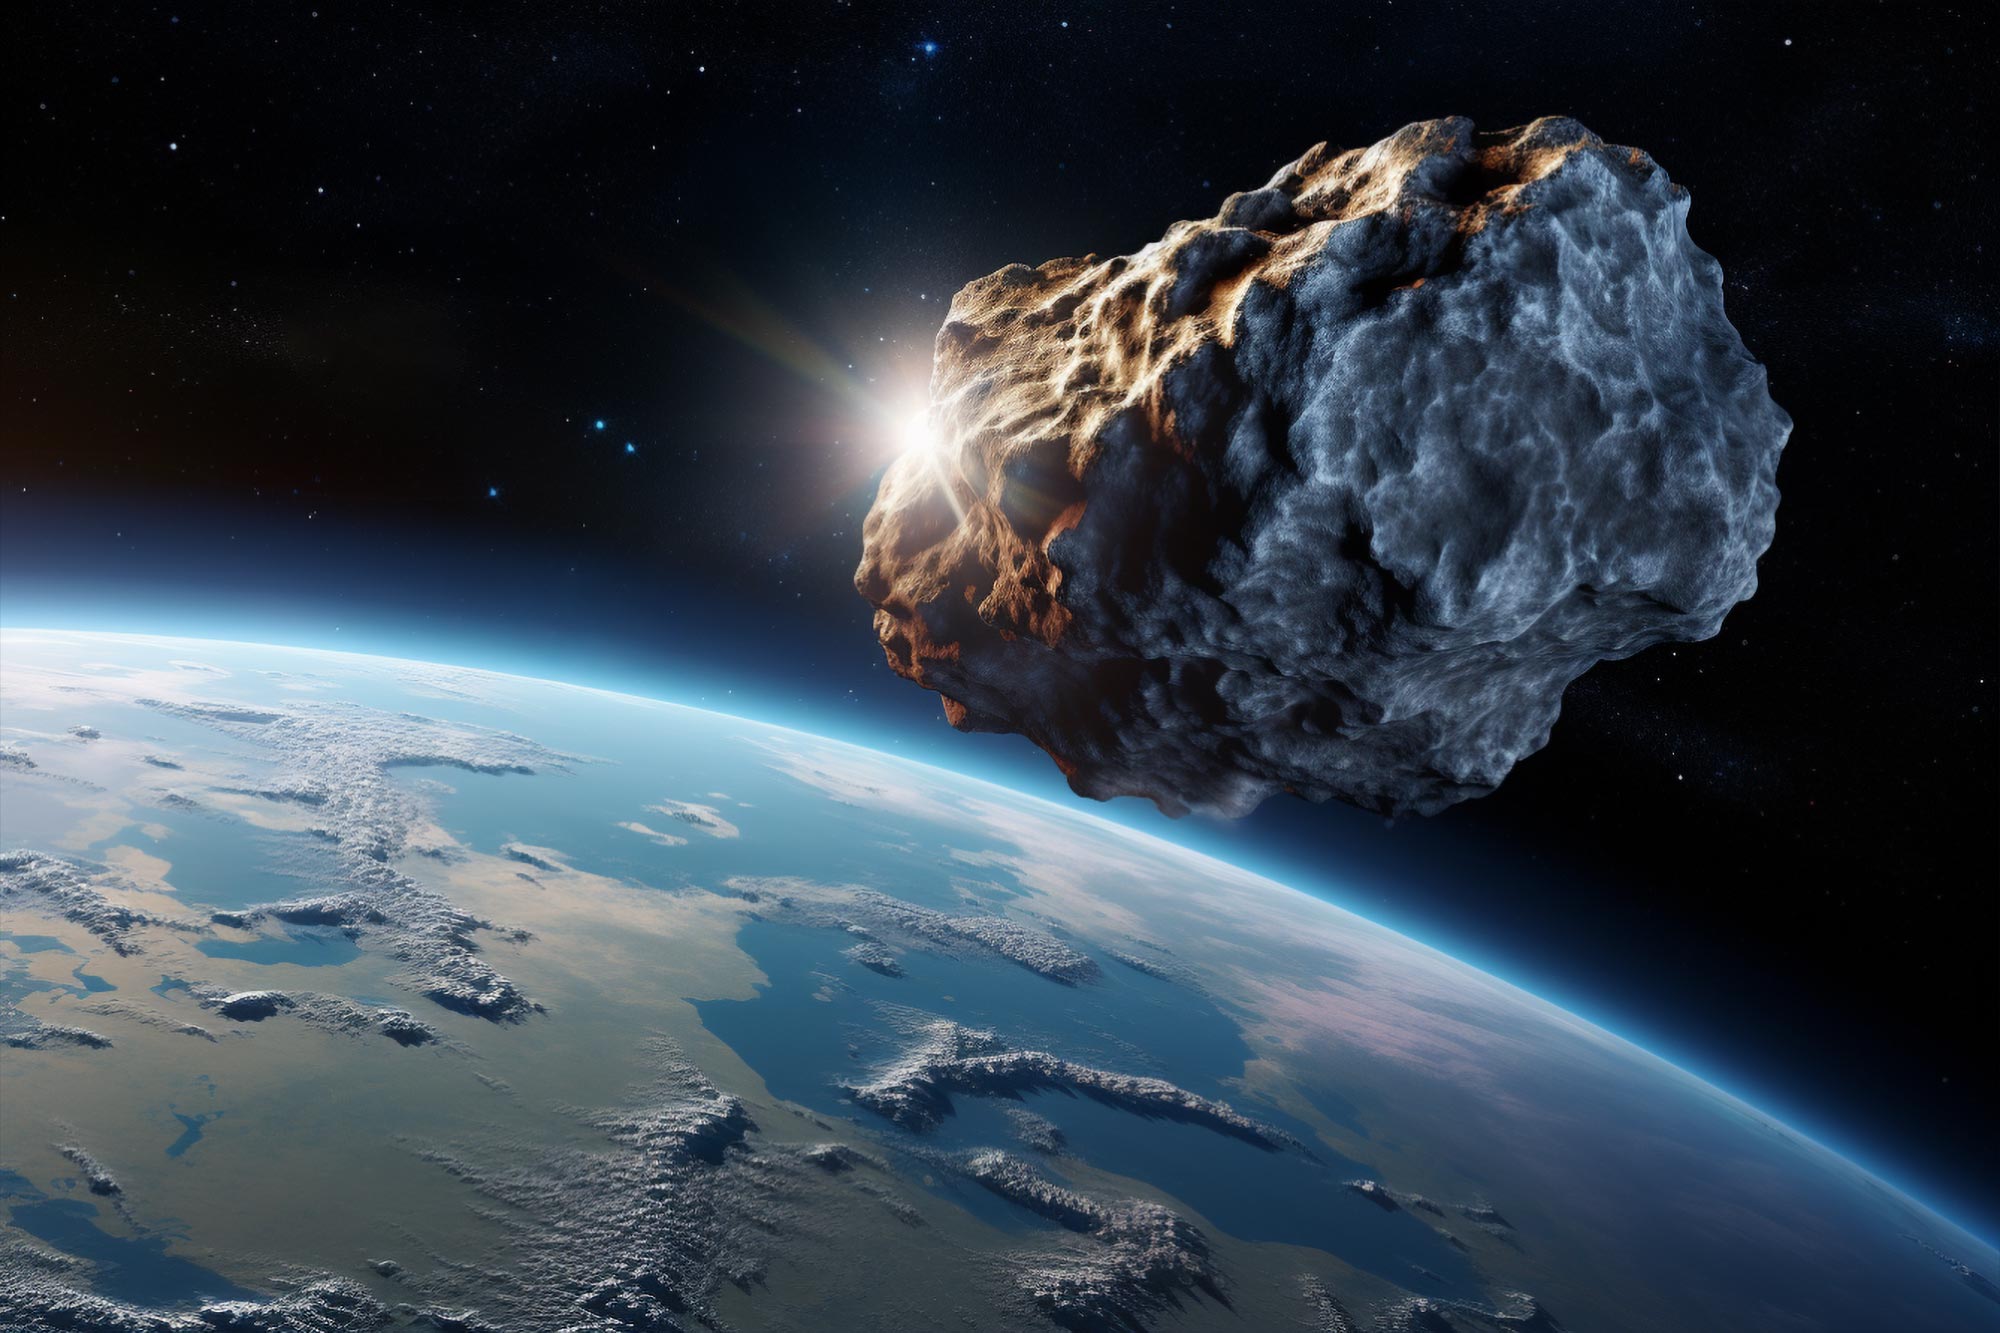 Entdeckung eines kleinen Asteroiden auf einem drohenden Kollisionskurs mit der Erde